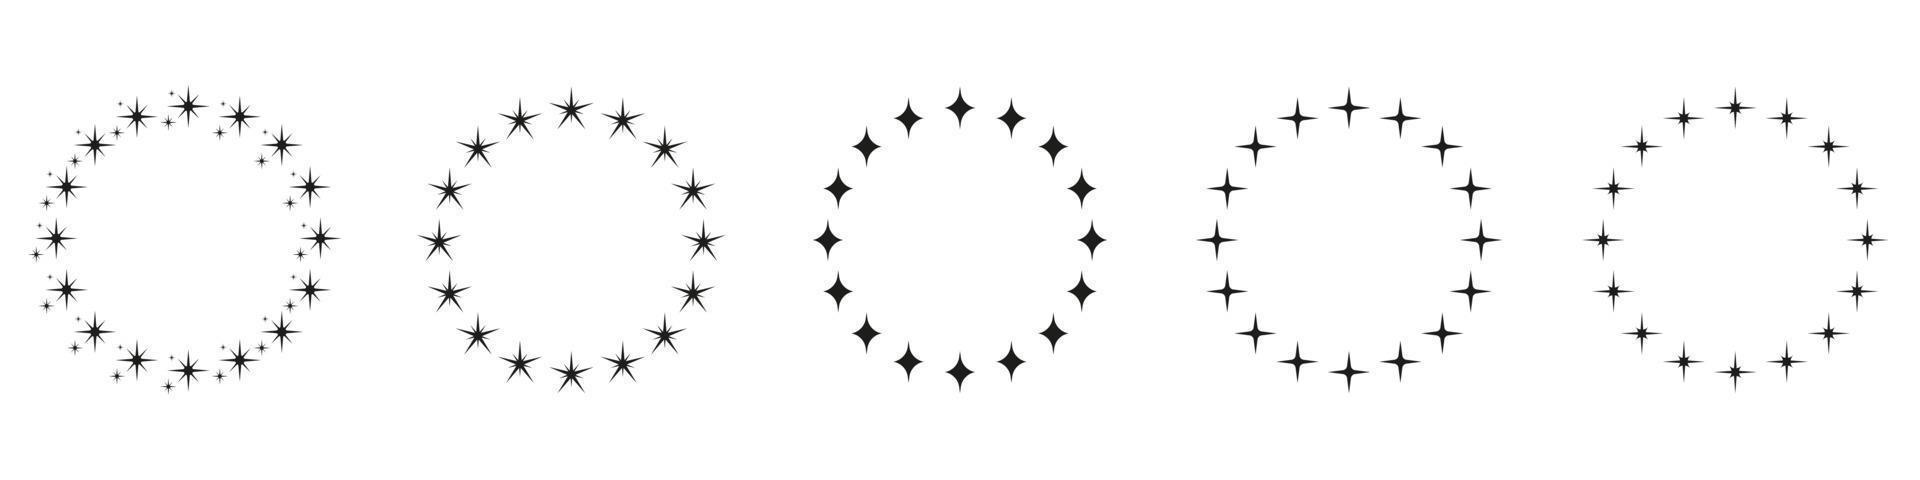 étoiles dans le jeu d'icônes de silhouette en forme de cercle. icône d'ornement décor circulaire sur fond blanc. cadre de prix rond moderne avec pictogramme d'étoiles noires. illustration vectorielle isolée. vecteur